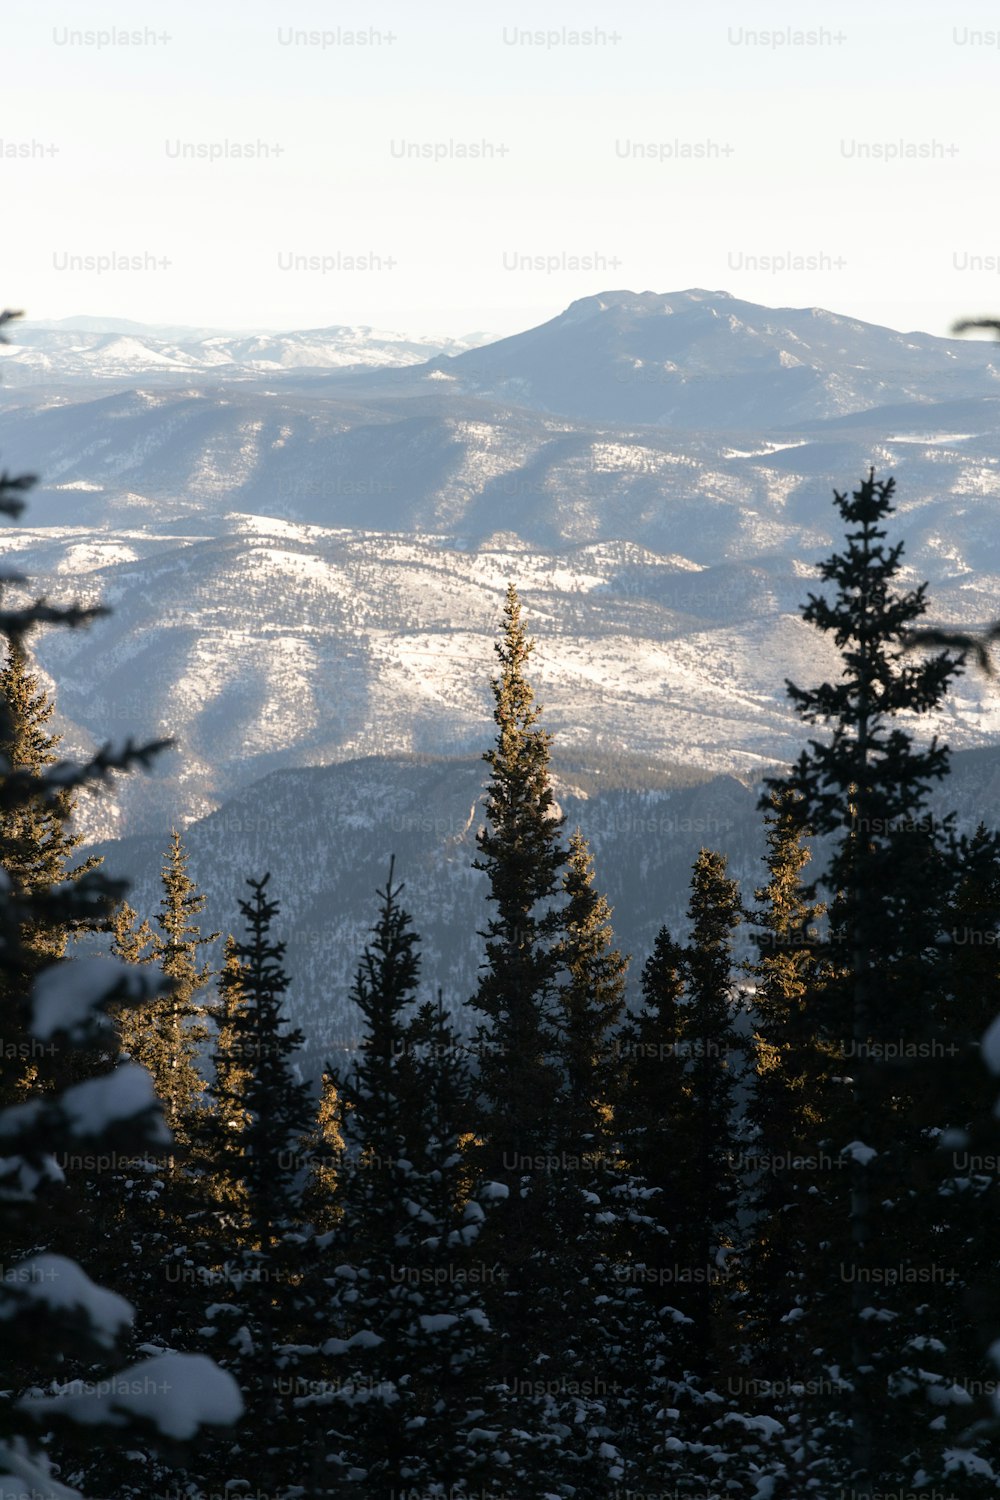 Una vista de una cadena montañosa con árboles cubiertos de nieve